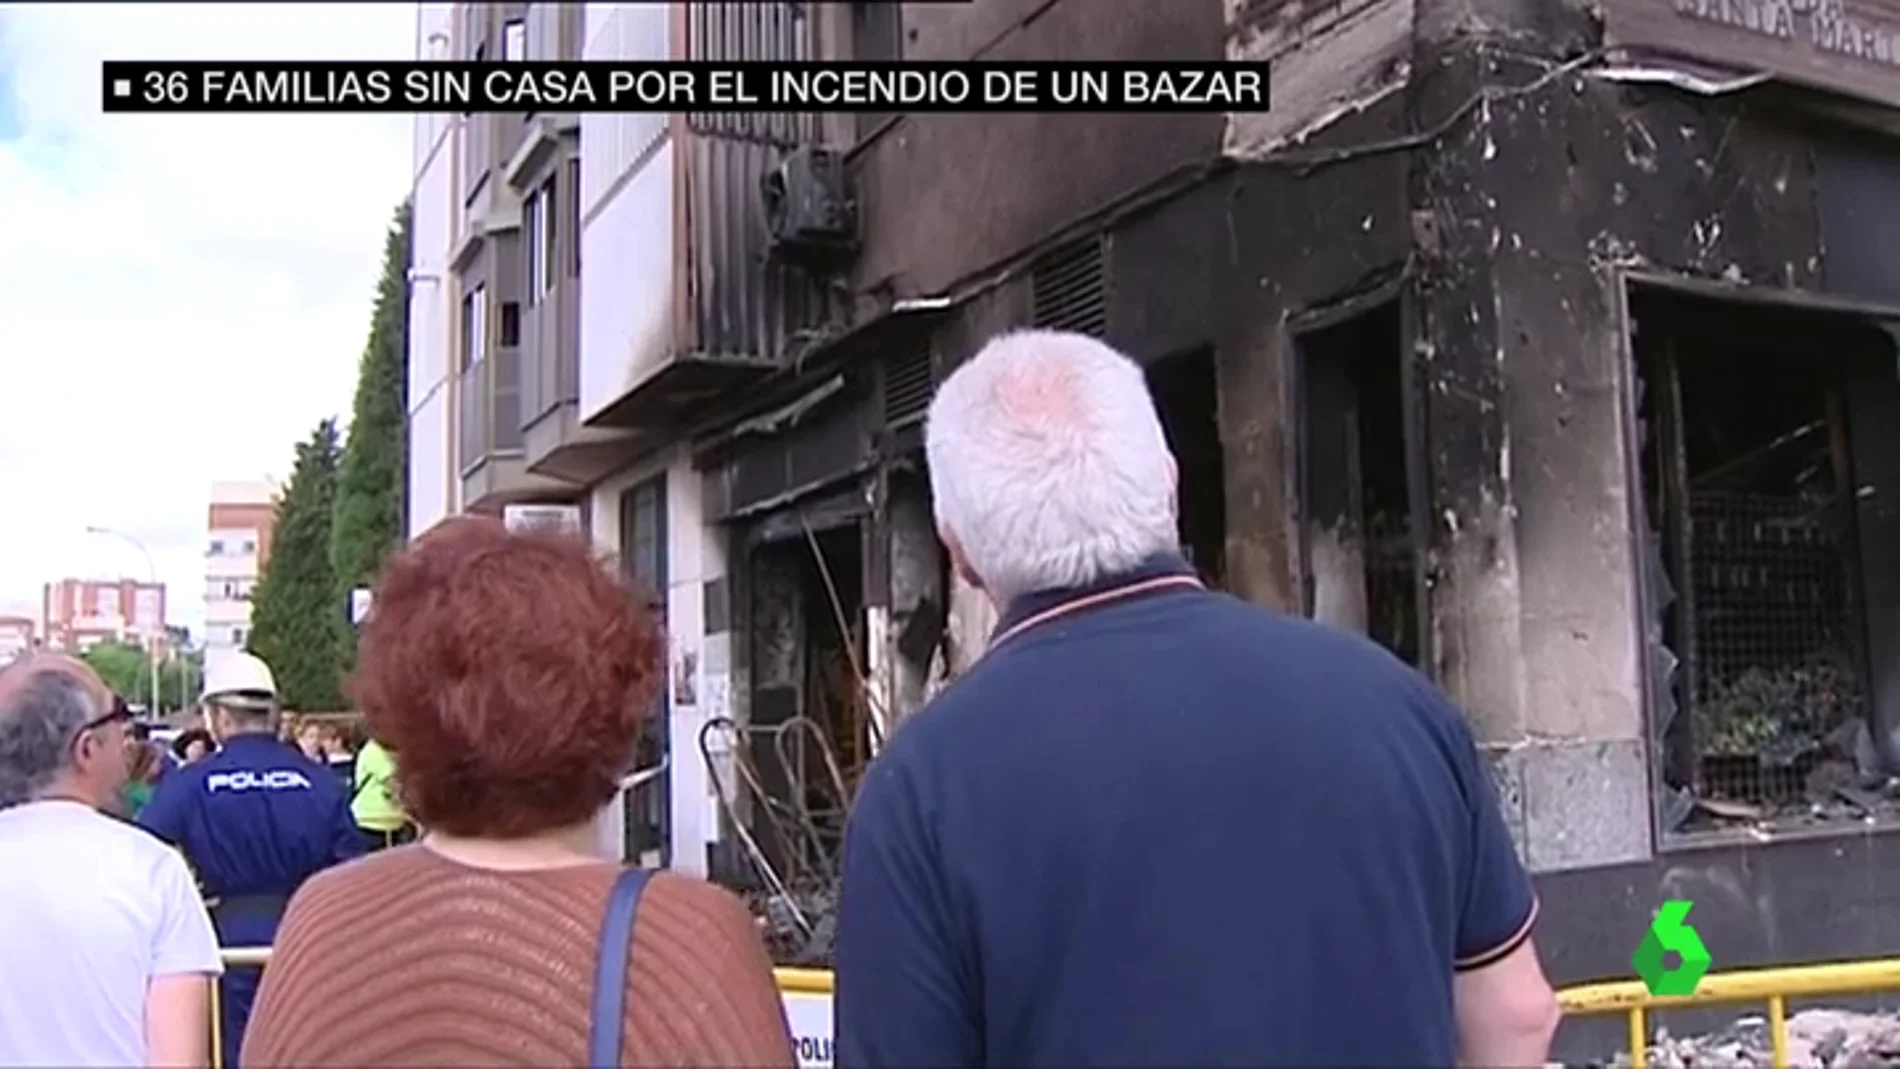 Frame 33.348534 de: Unos menores, posibles autores del incendio en un bazar que ha dejado a 36 familias de Huelva en la calle